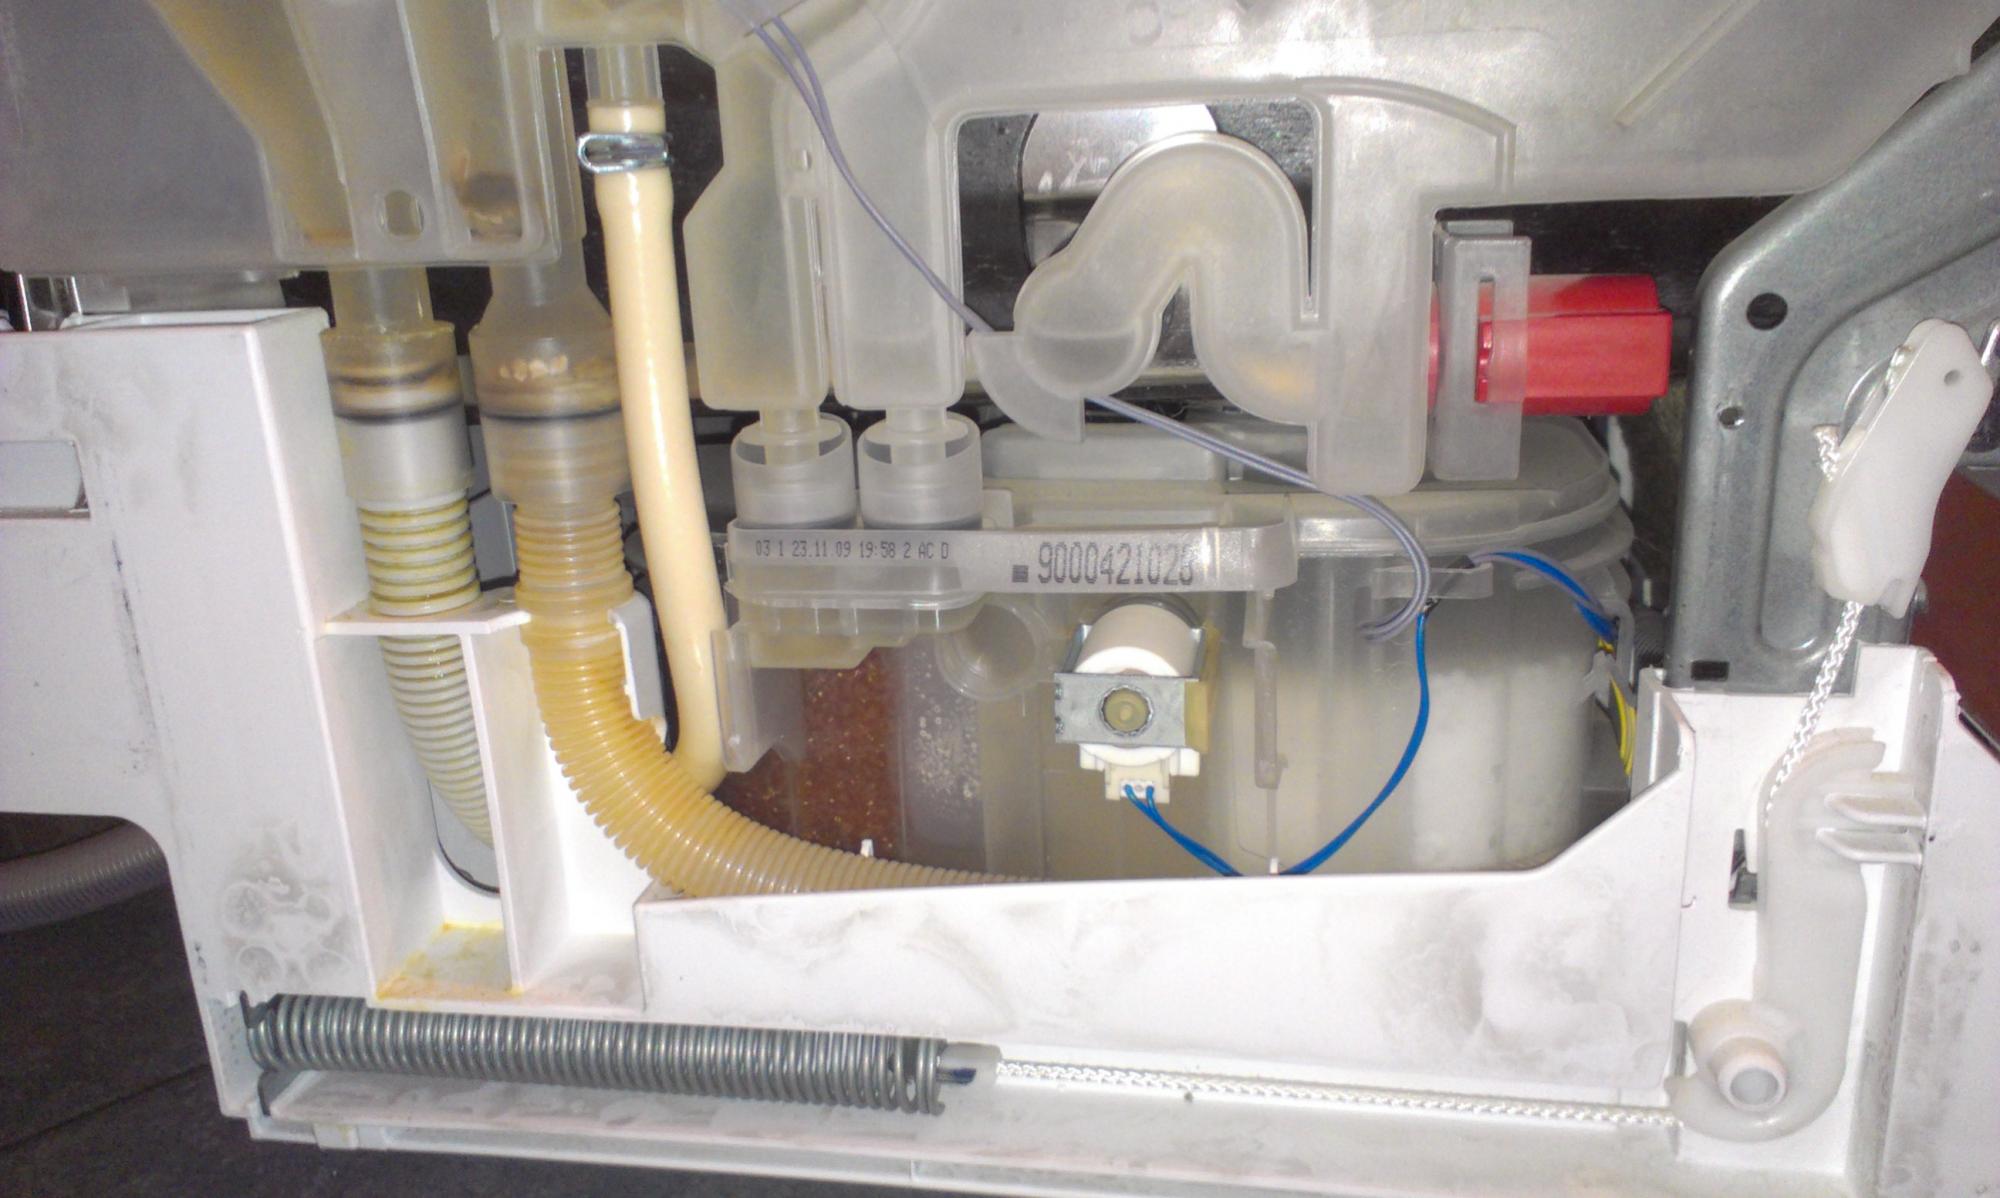 kust passage Automatisering Blanc] Lave-vaisselle Siemens - problème arrivée d'eau - aquastop?